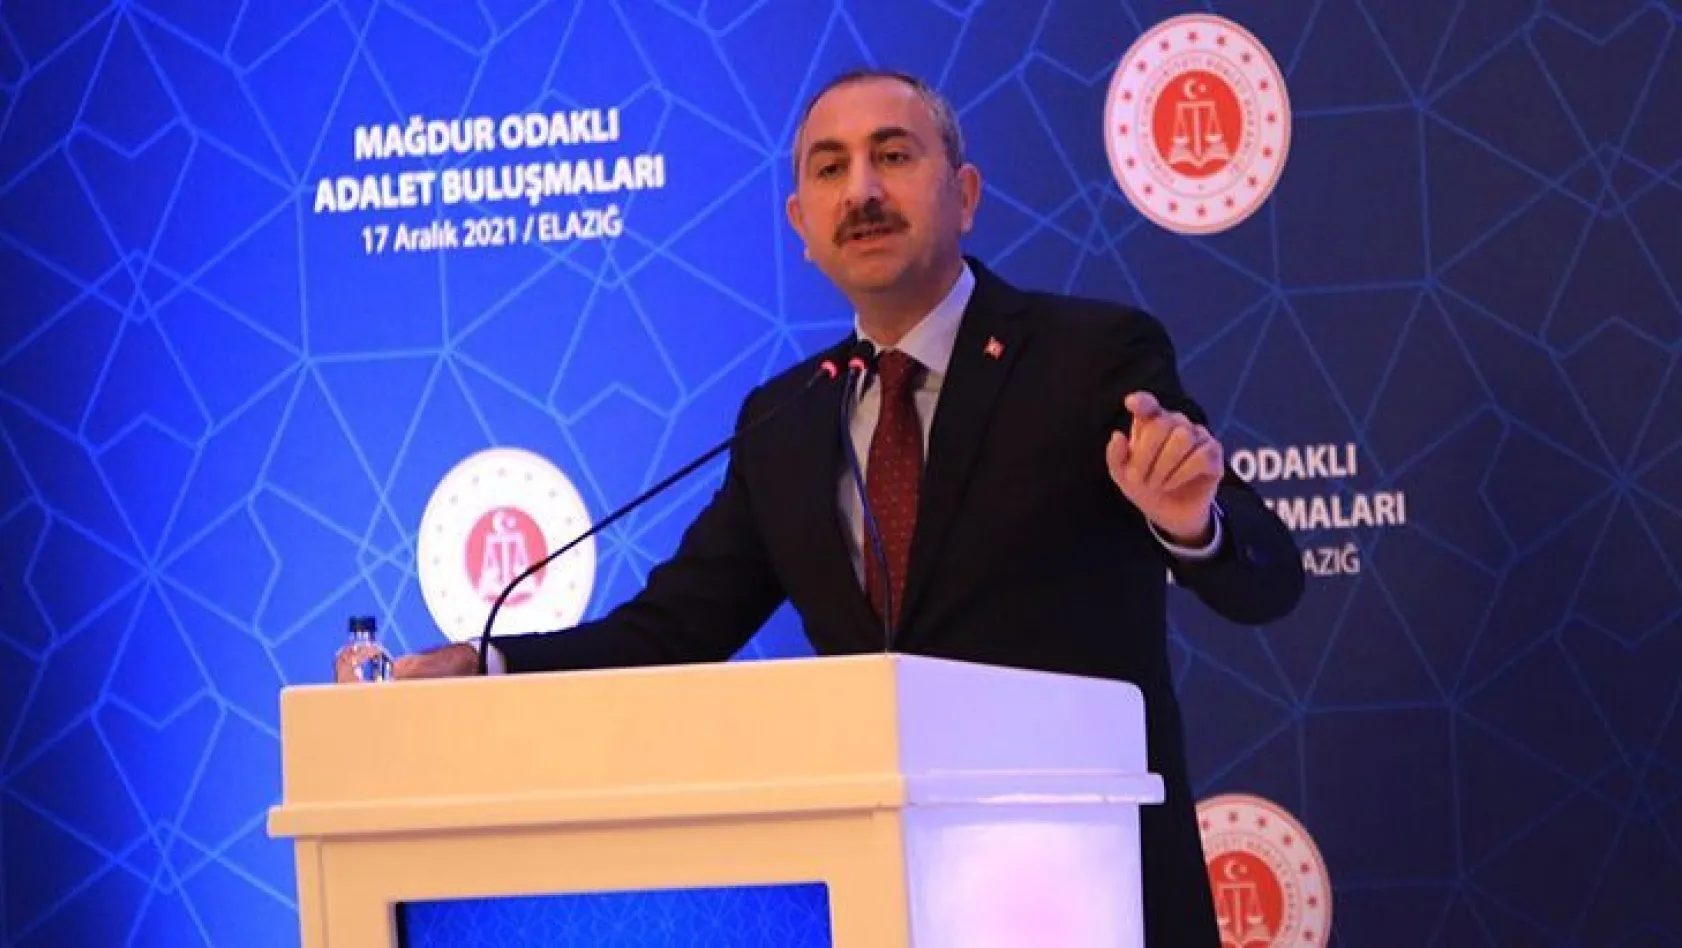 Adalet Bakanı Gül: 'Yargı adaleti insanımızın sığınacağı en son limandır, çaredir'